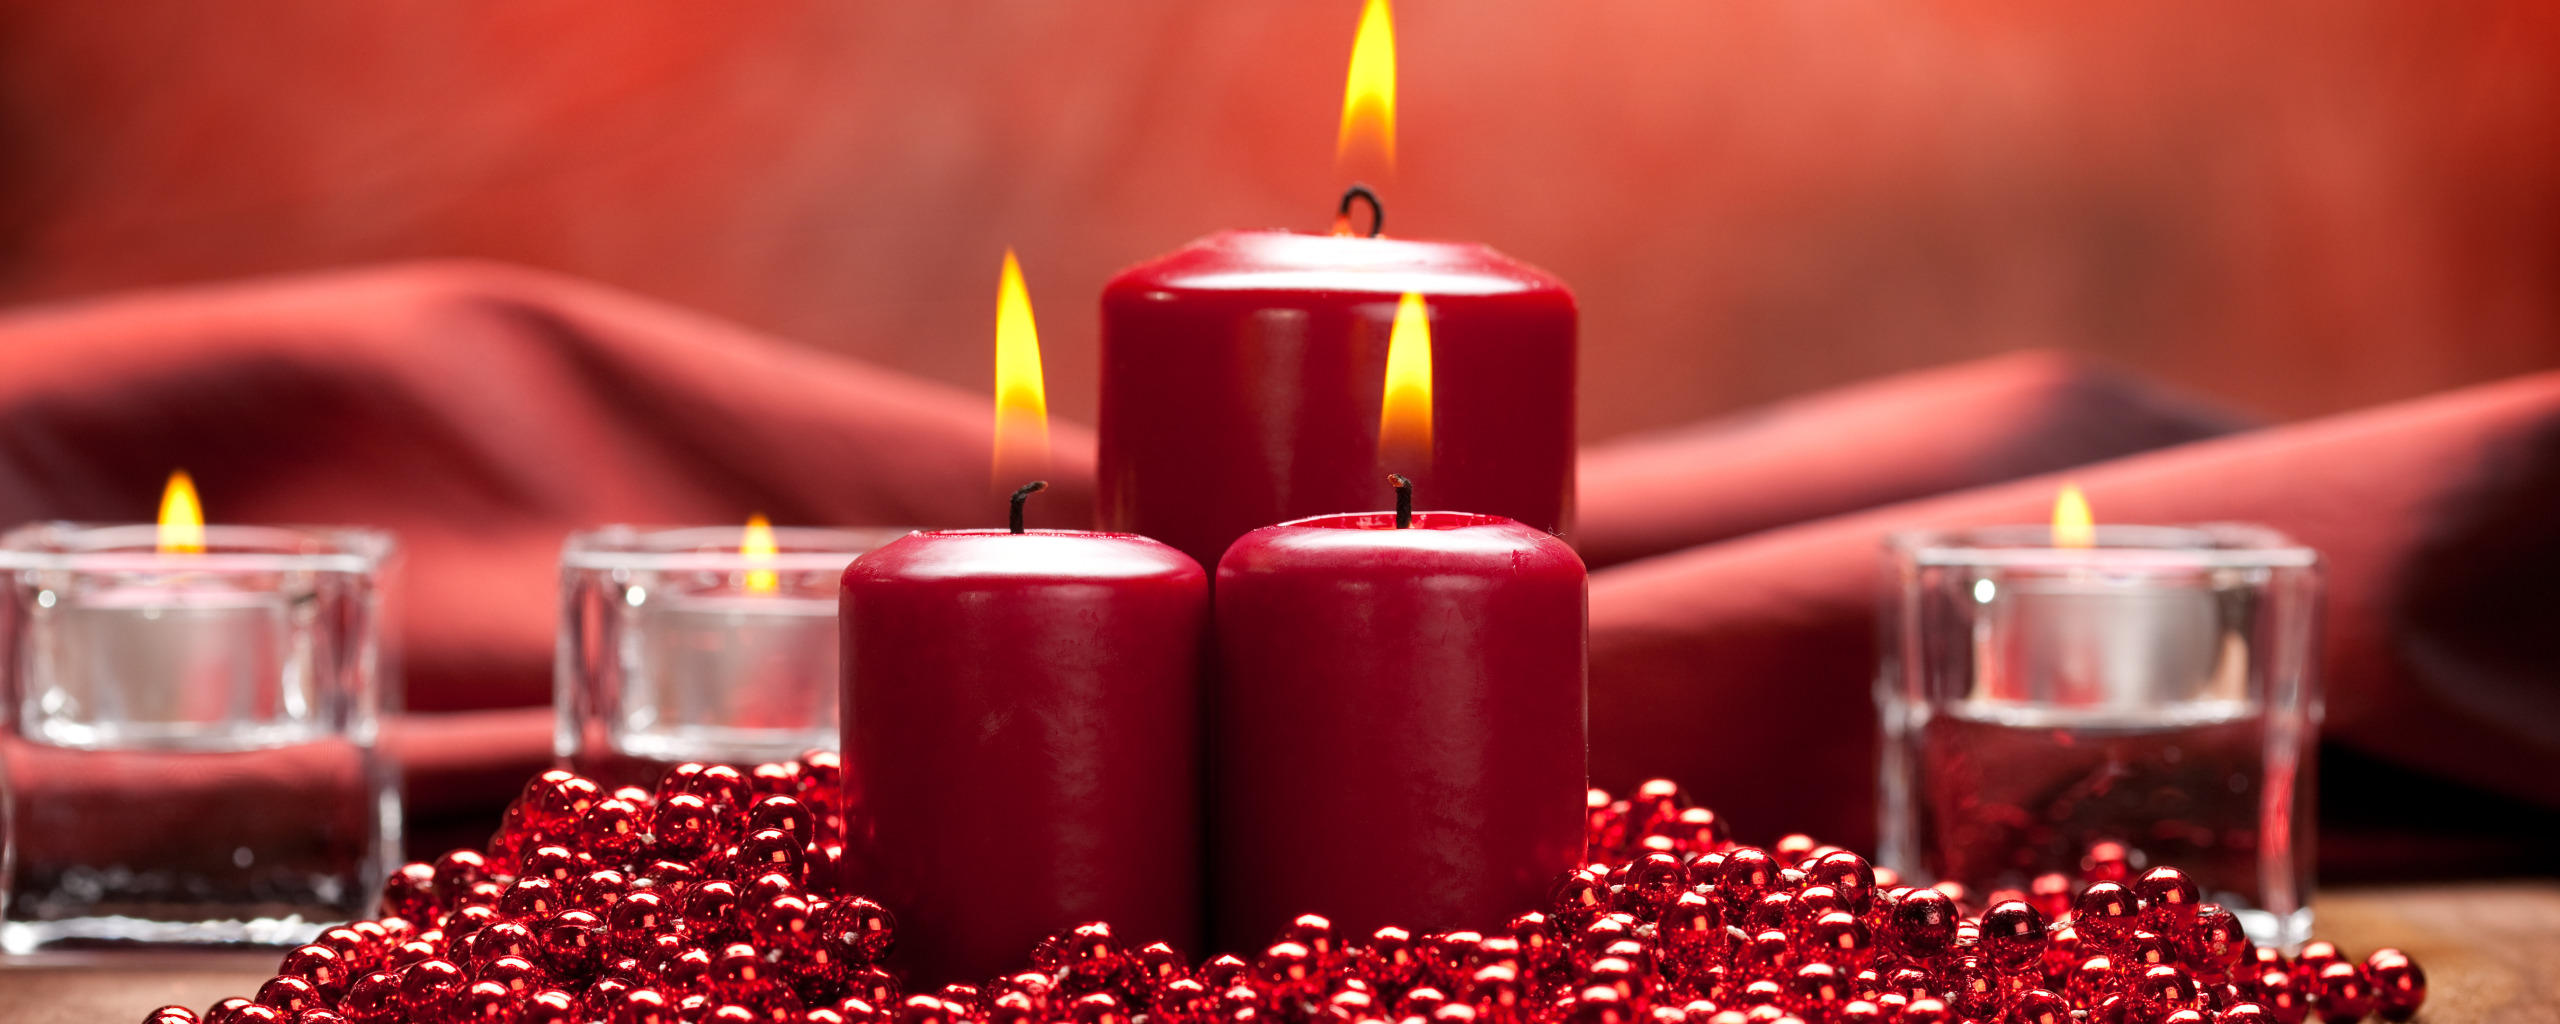 Красная свеча. Красные церковные свечи. Две красные свечи. Механика на красных свечах. Что означает красная свеча